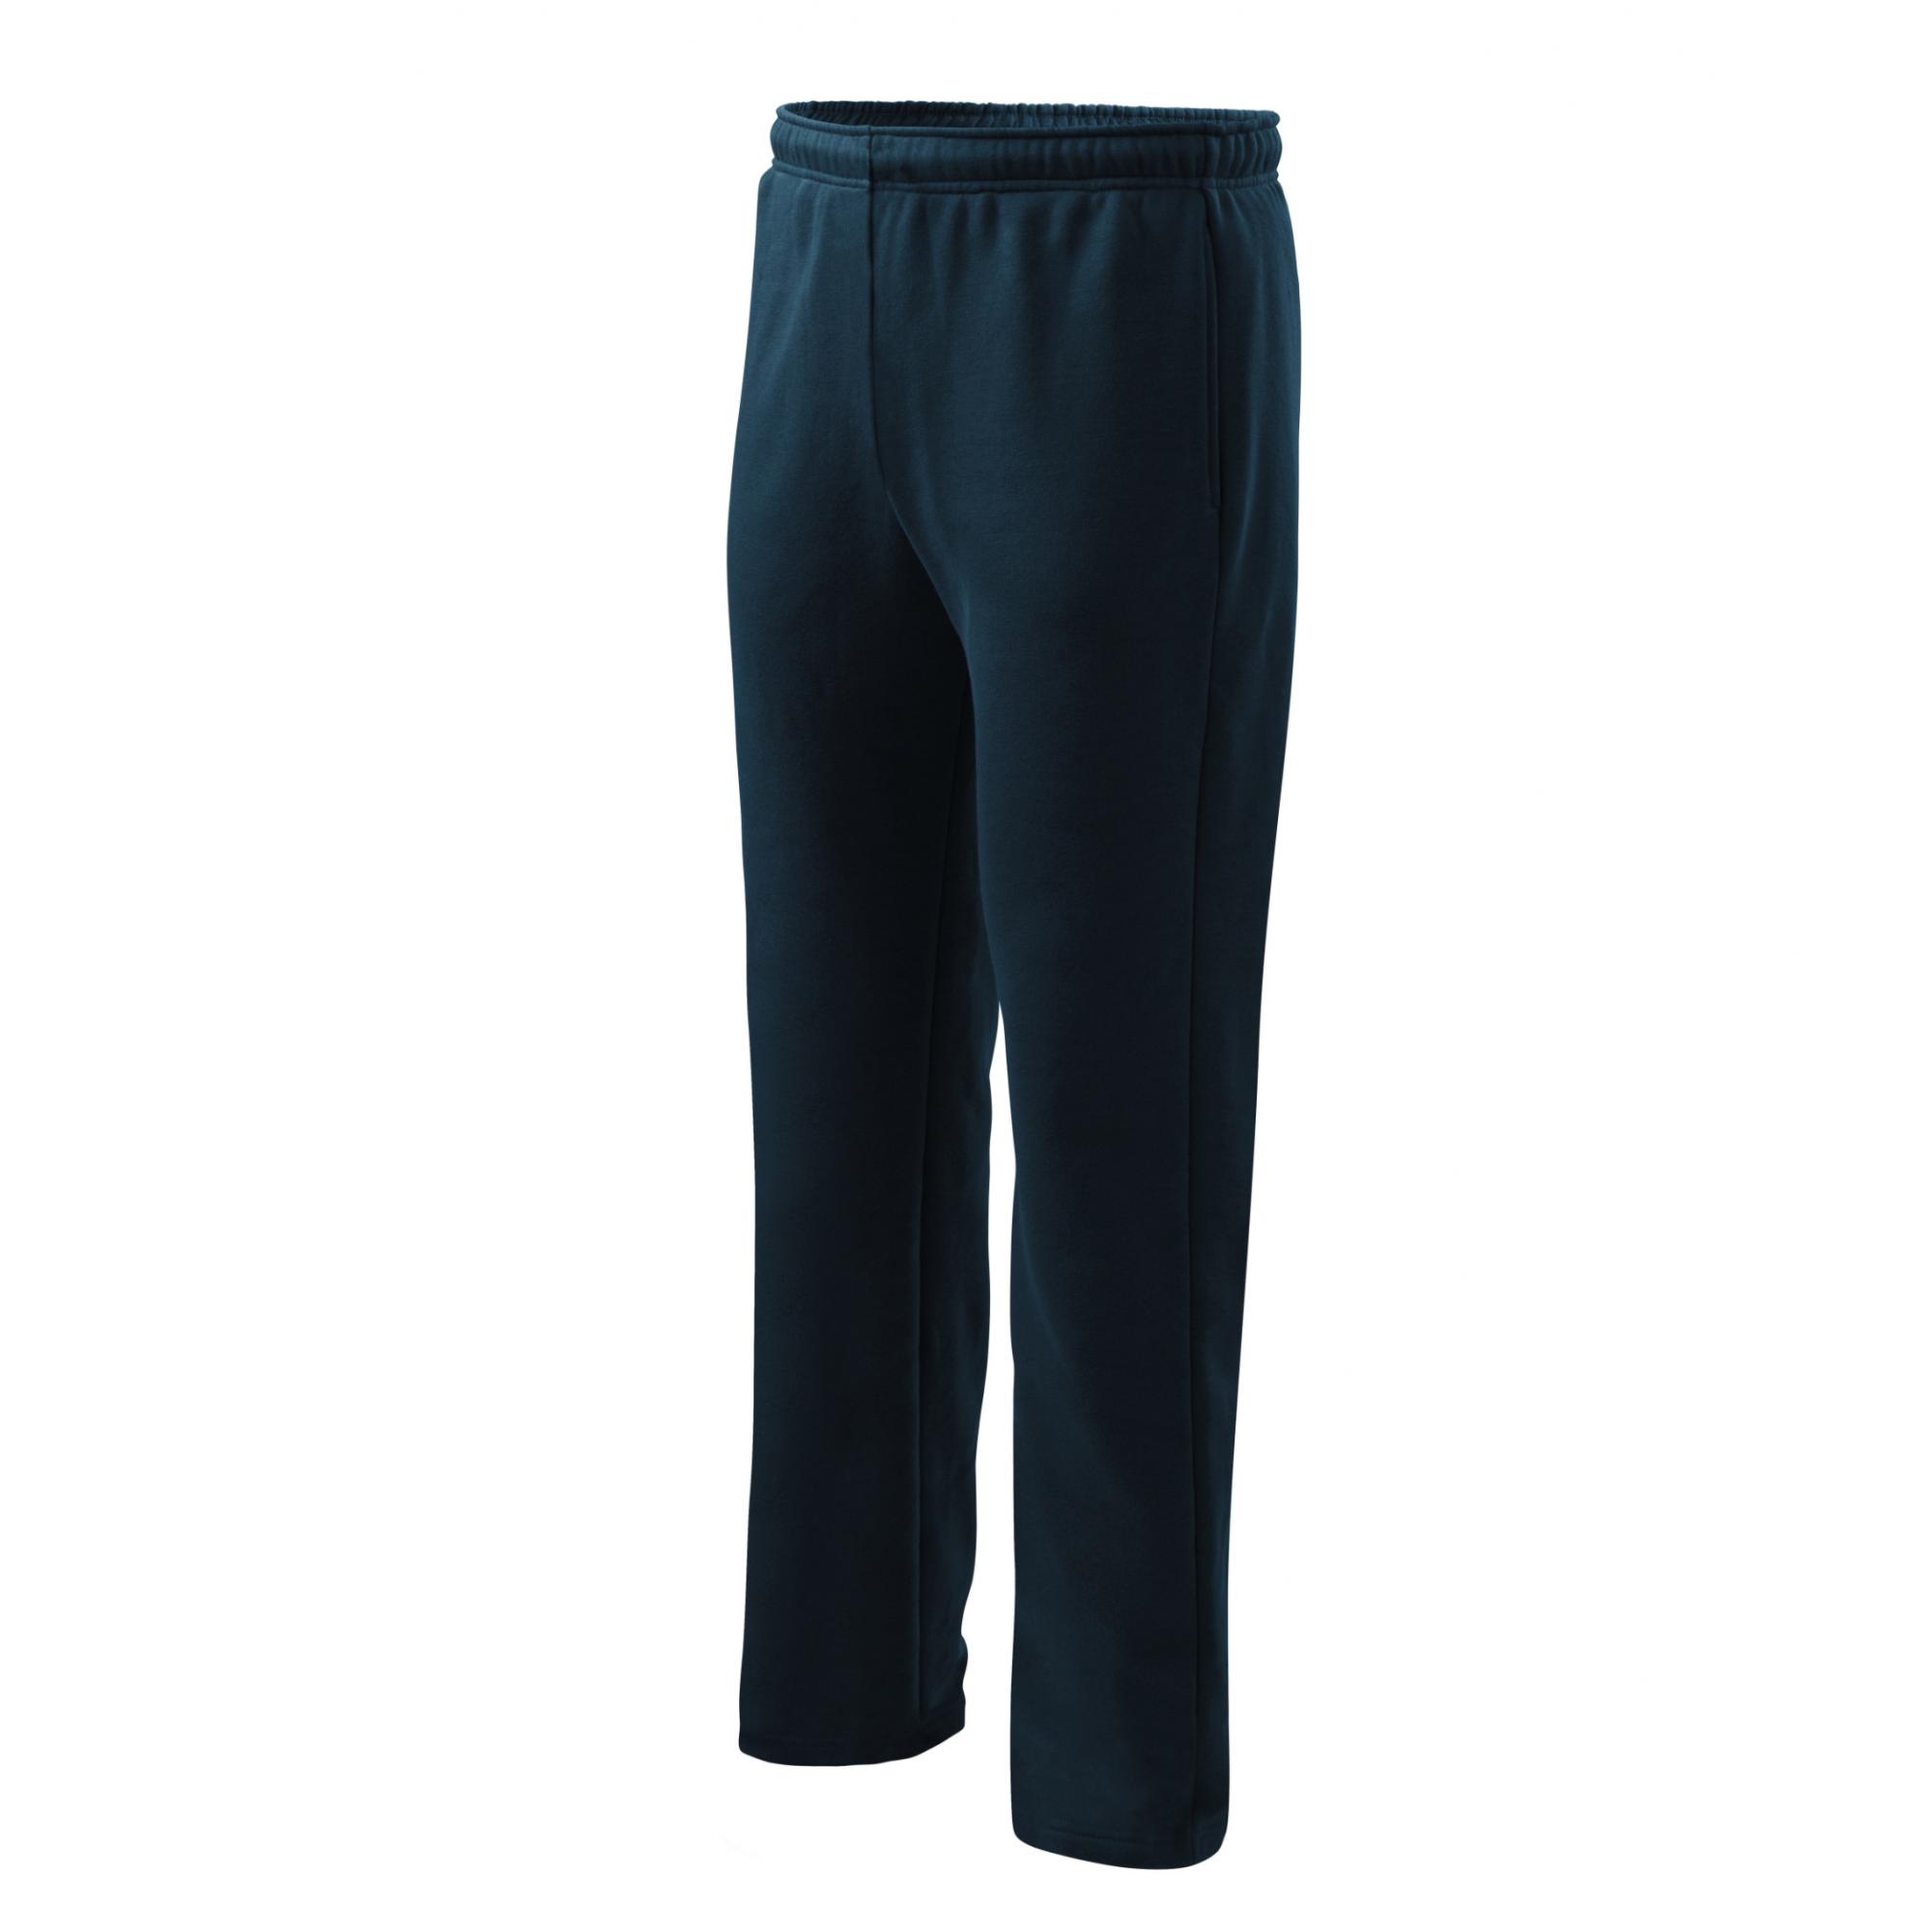 Pantaloni pentru bărbaţi/copii Comfort 607 Albastru marin 12ani